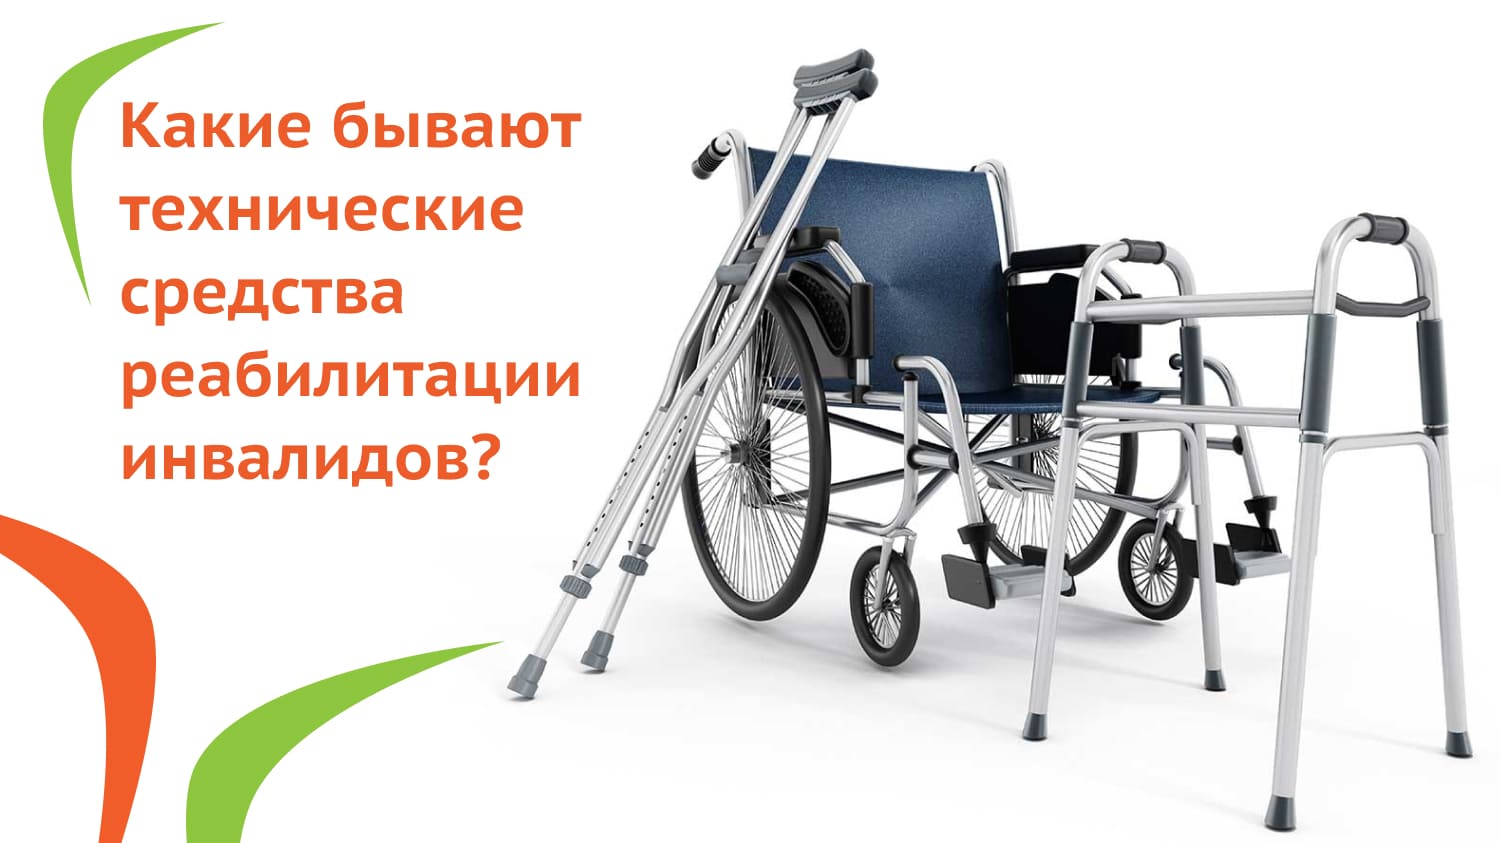 Какие бывают технические средства реабилитации инвалидов?